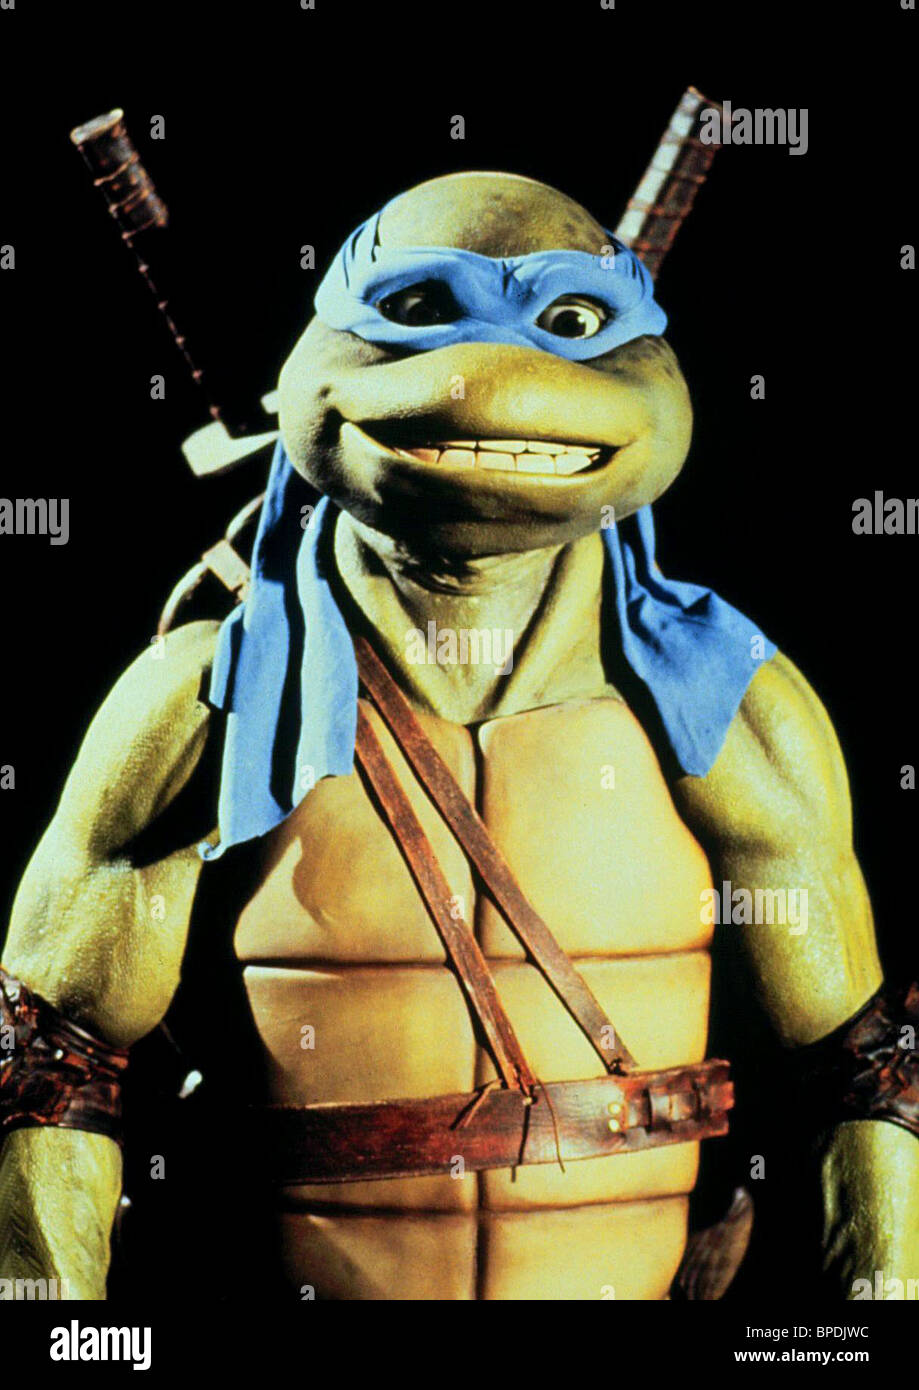 leonardo-teenage-mutant-ninja-turtles-1990-BPDJWC.jpg